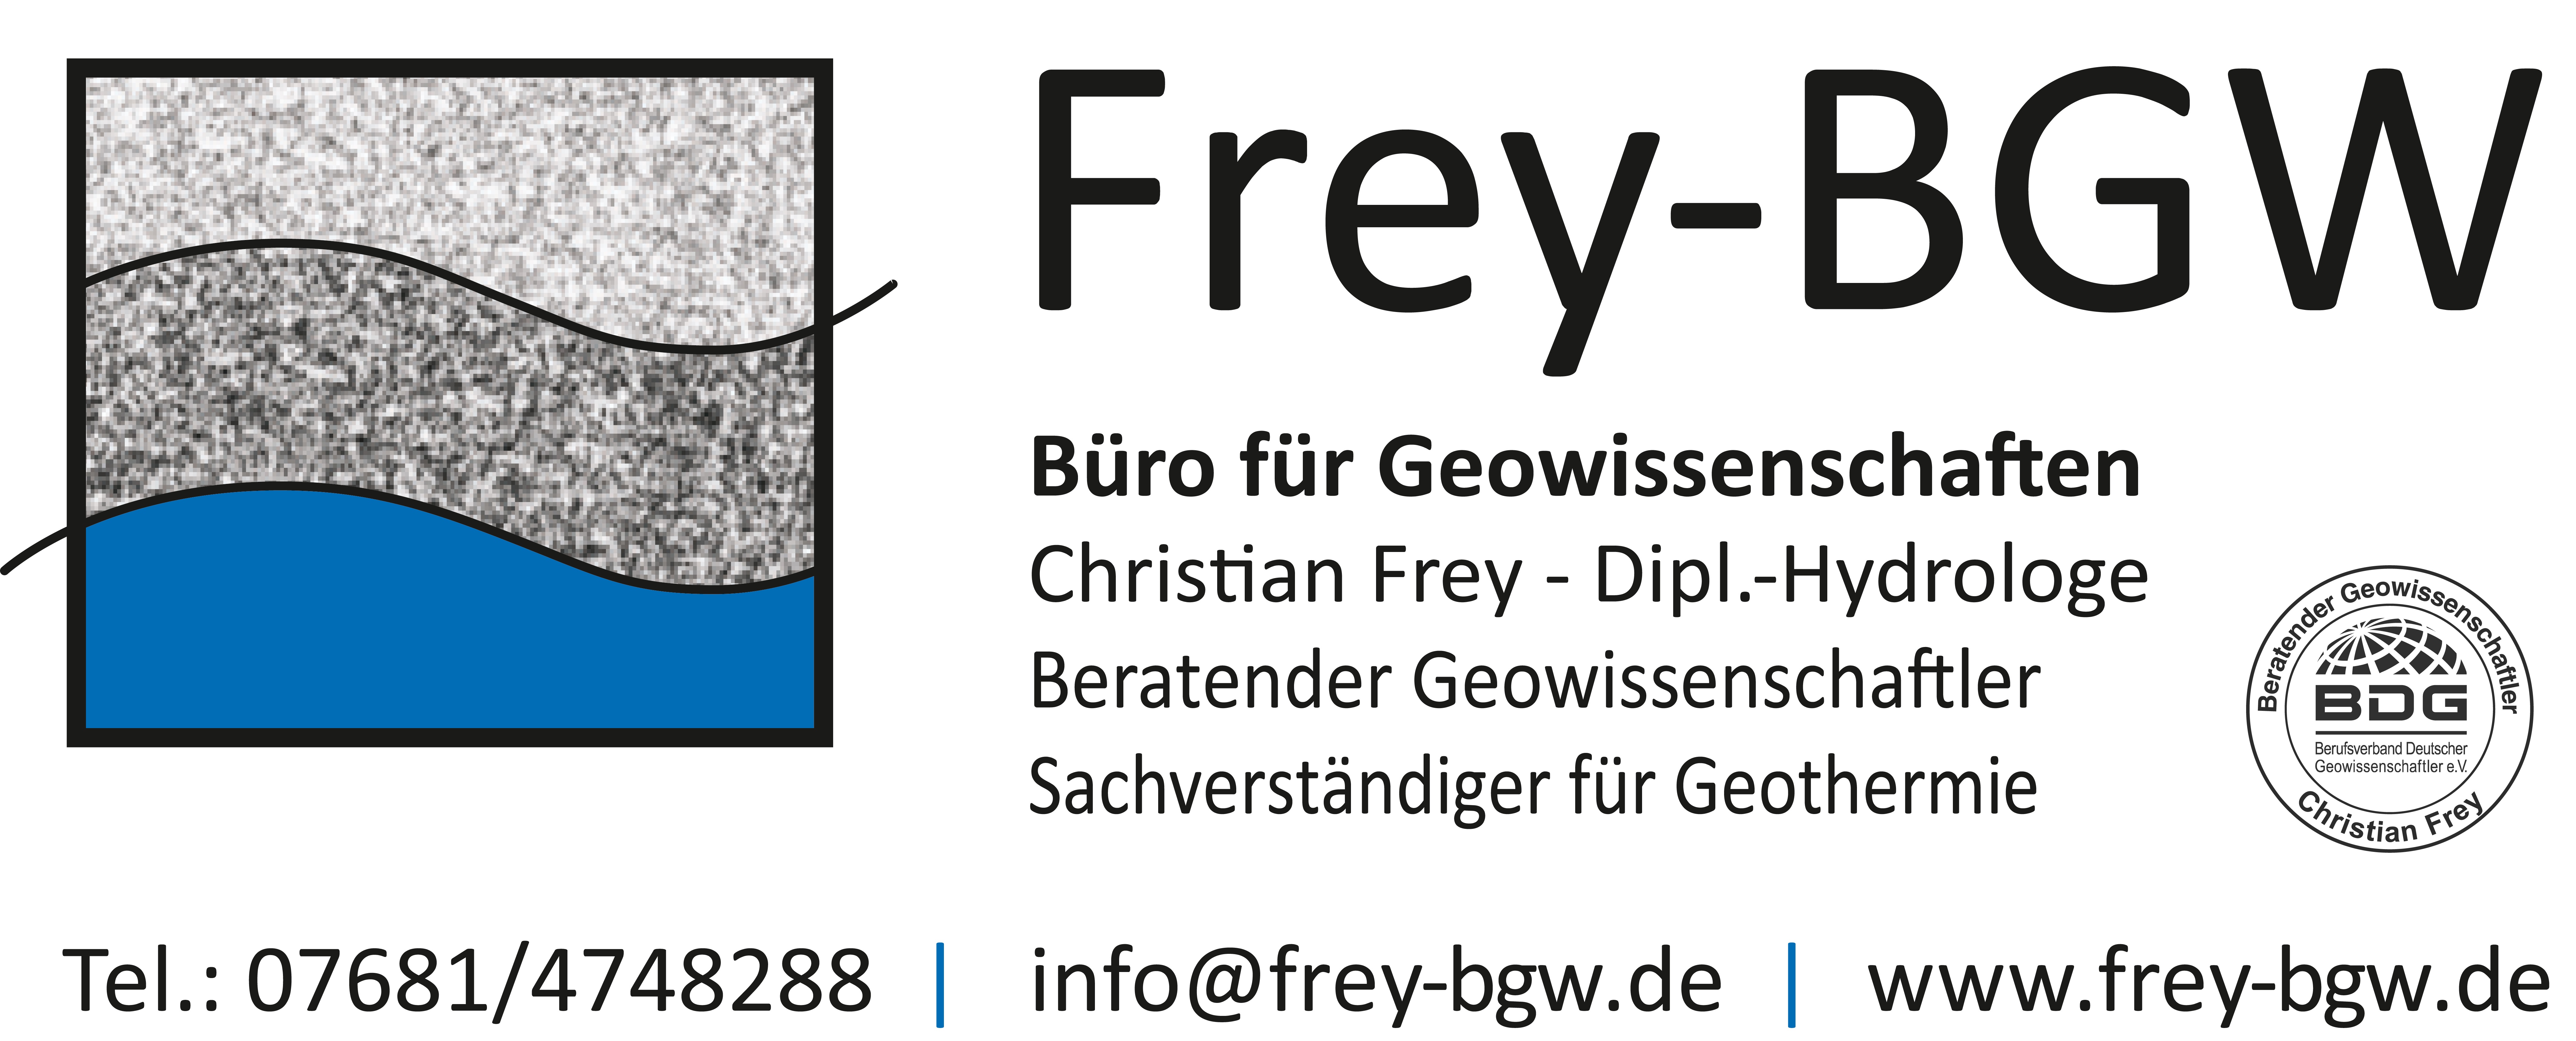 Frey-BGW